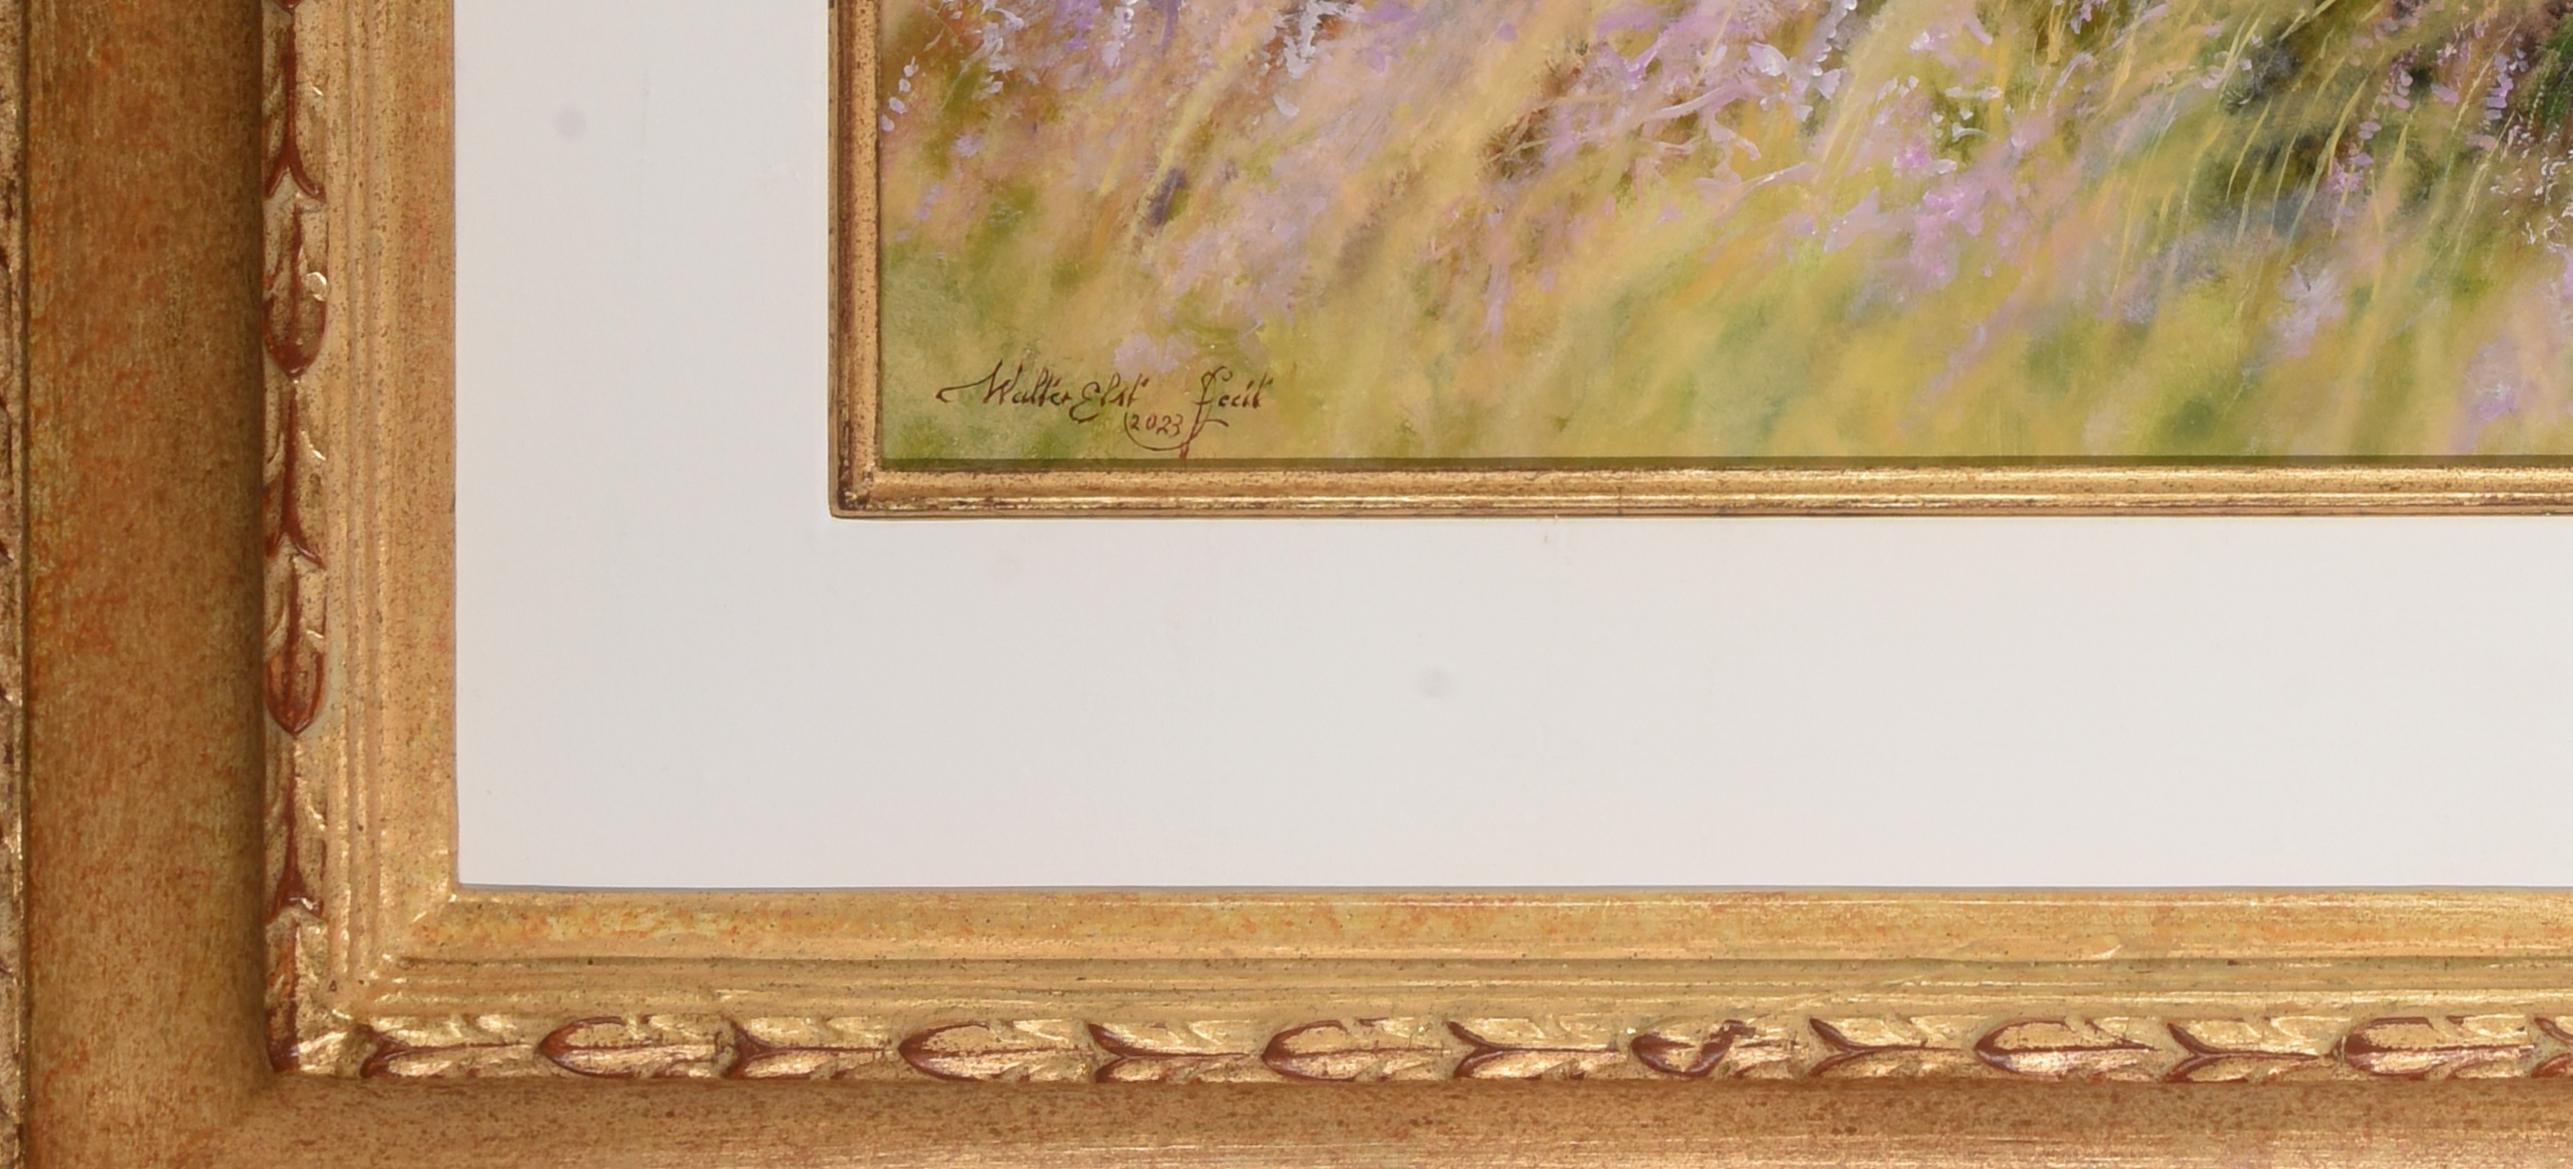 Heide in Bloei Heather in Bloom Oil Painting on Panel Landscape In Stock For Sale 1